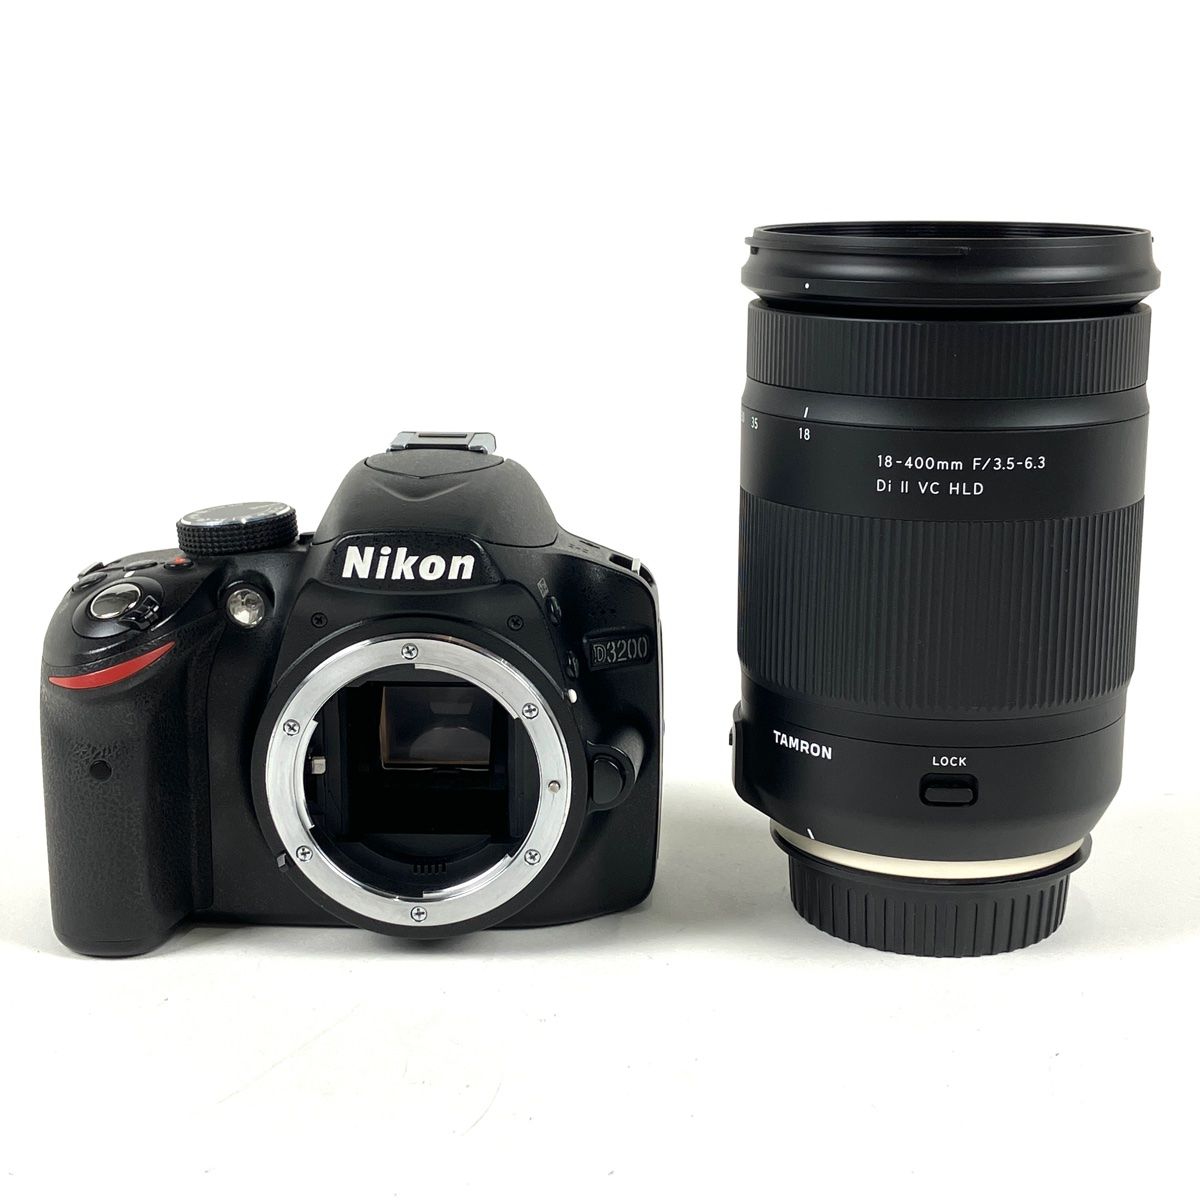 ニコン Nikon D3200 + TAMRON 18-400mm F3.5-6.3 Di II VC HLD 